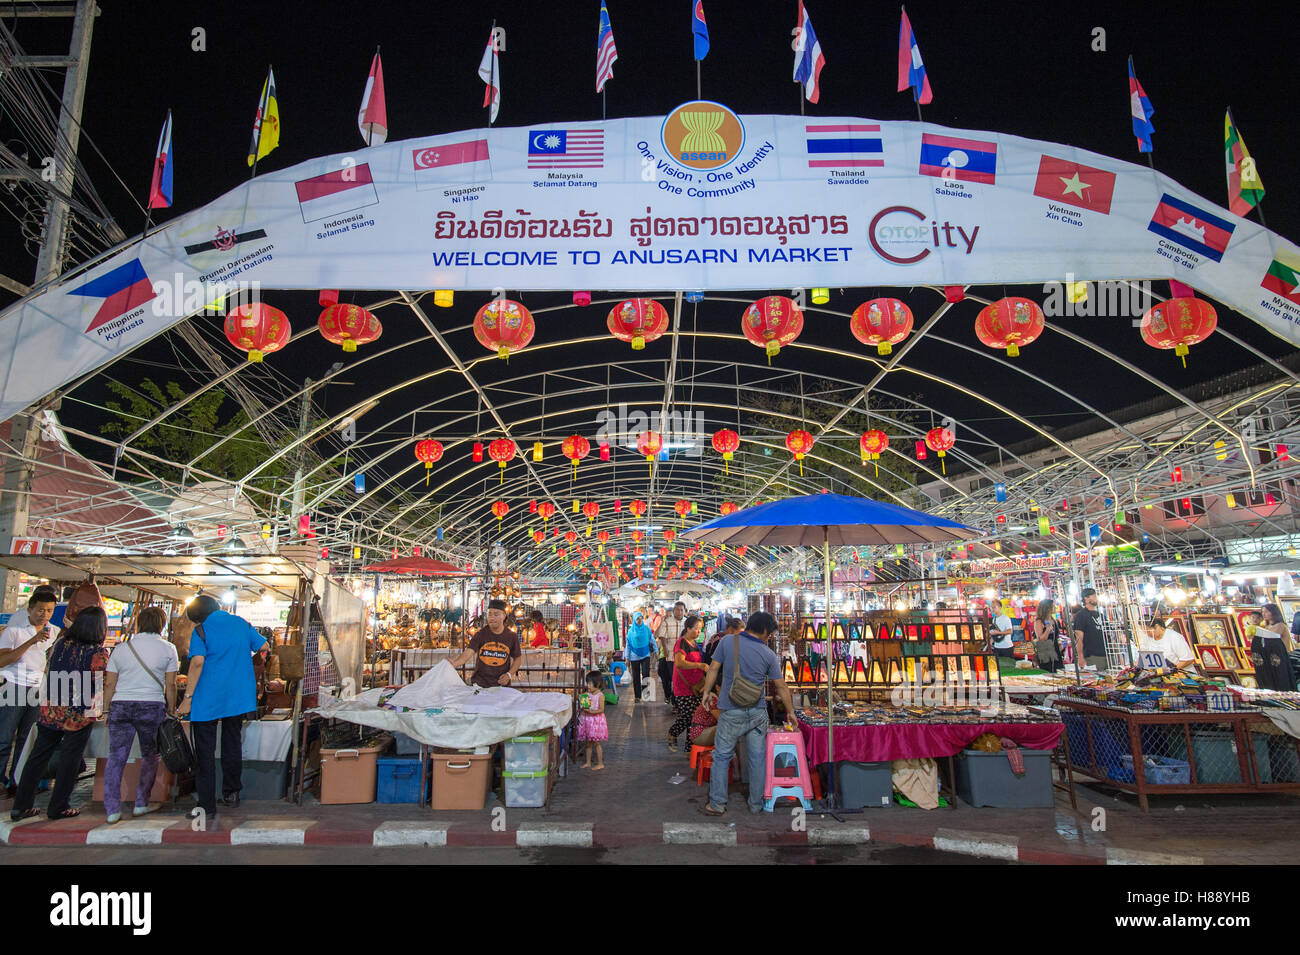 Nacht Markt in Chiang Mai. Chiang Mai ist ein wichtiges touristisches Ziel in Nordthailand. Stockfoto